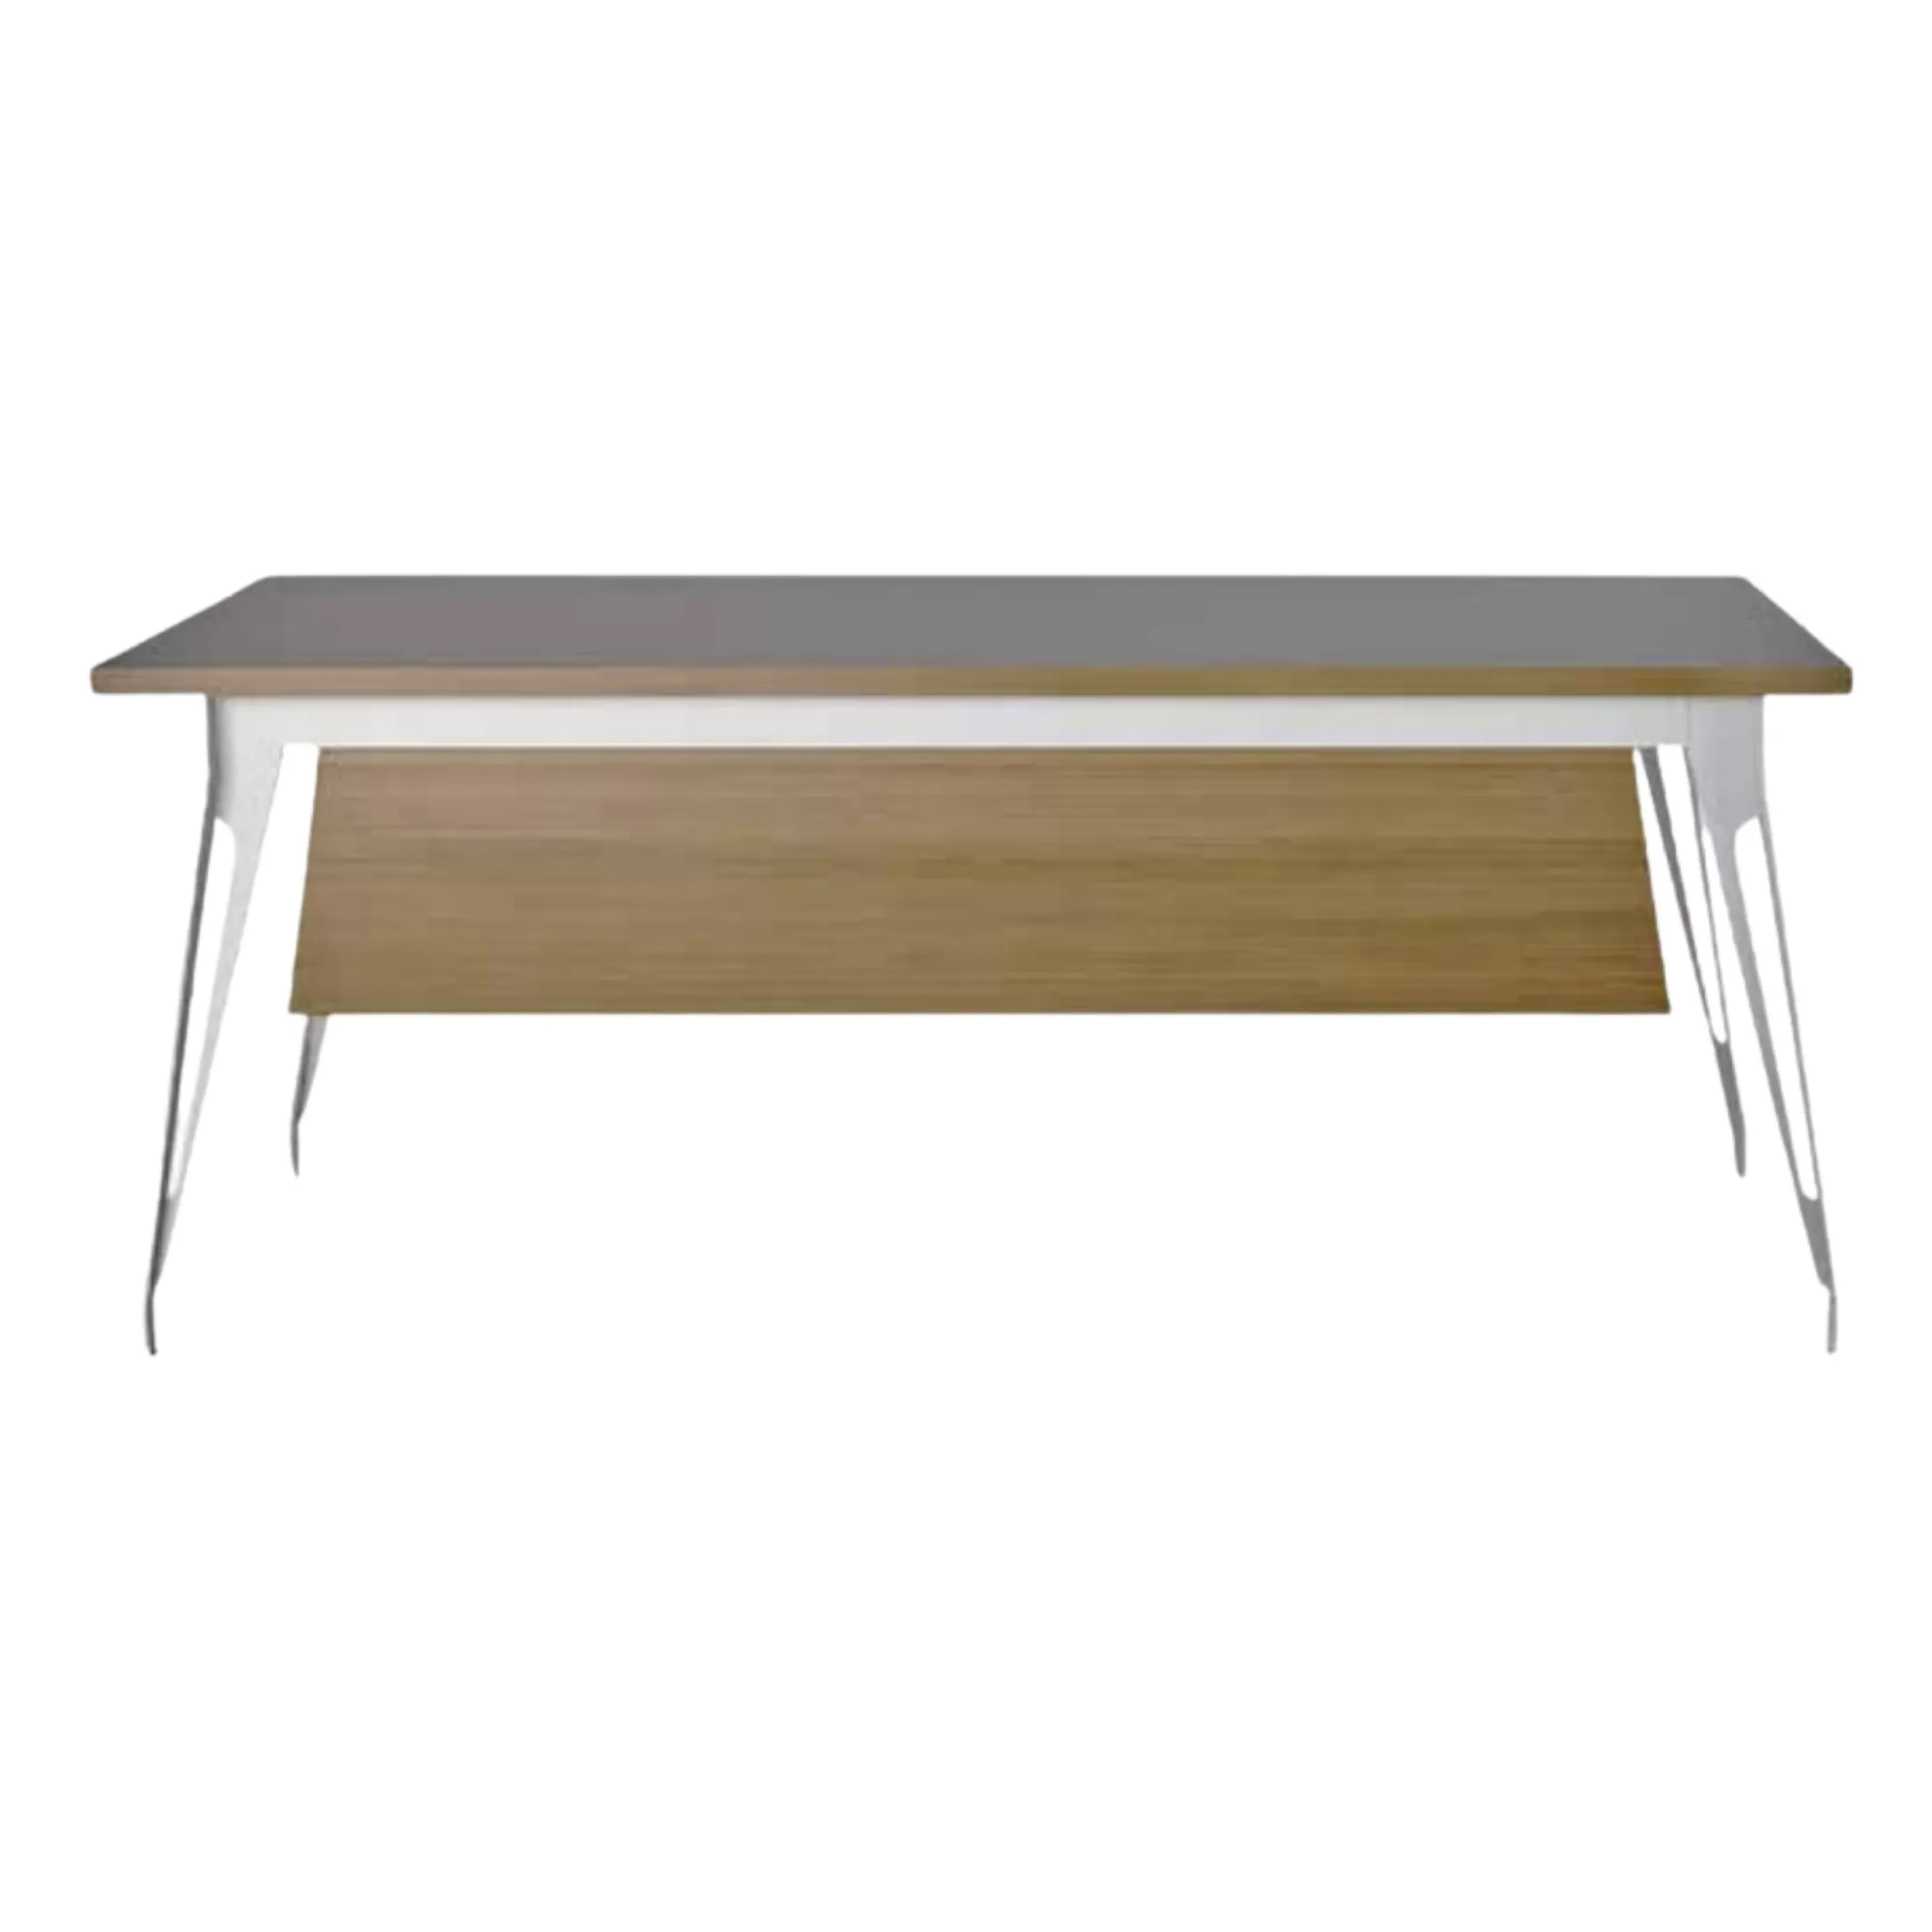 FELIX Individueller Executive-Schreibtisch Metall-Tischbein Büro modern Esszimmer-Büromöbel elegant langlebiges Metall-Möbel-Bein